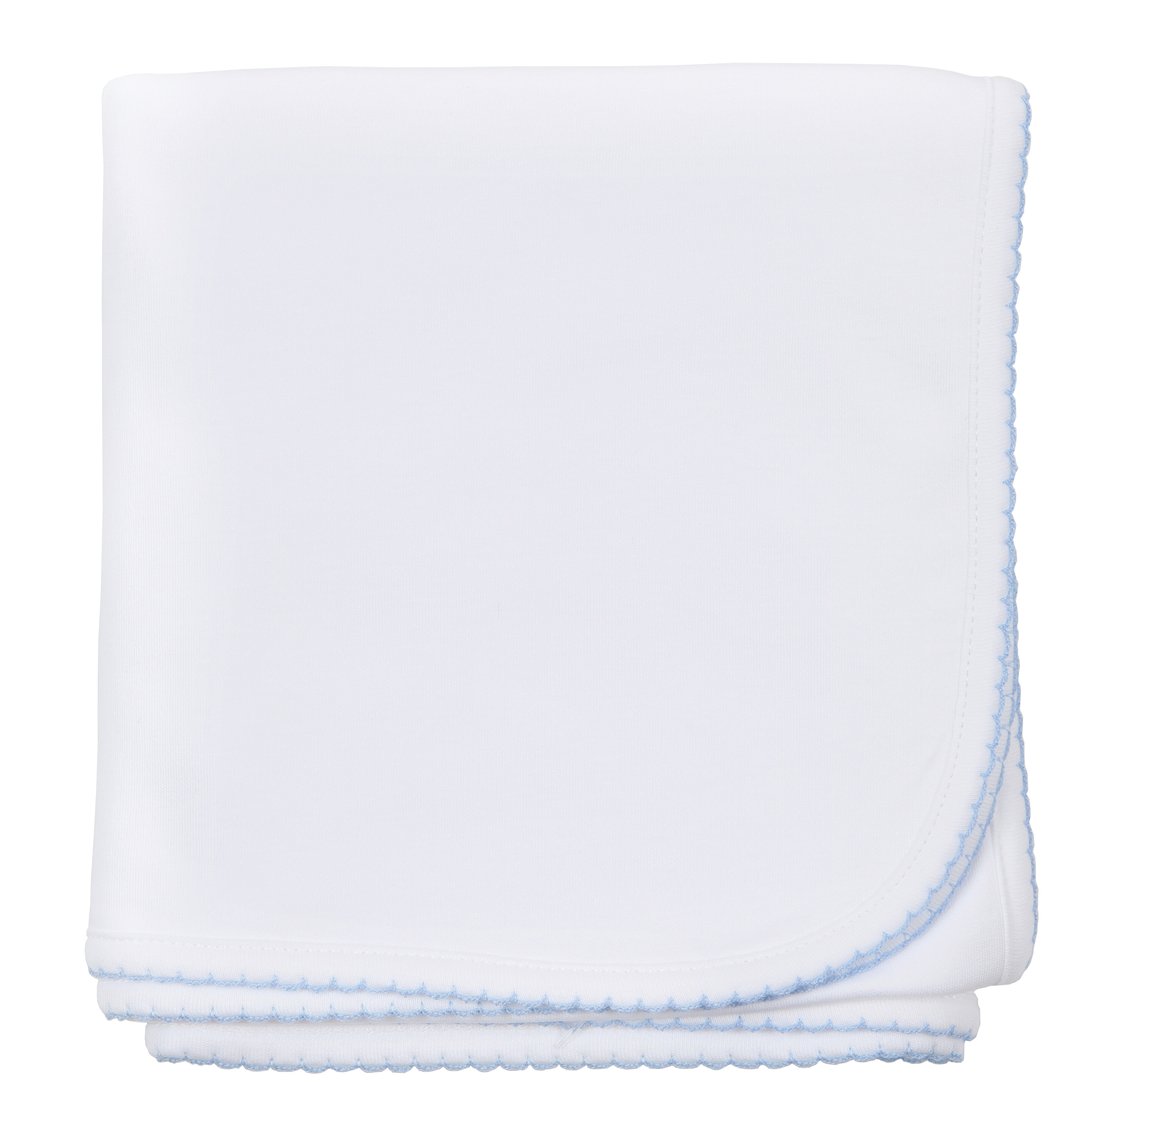 Essentials Blanket White with Blue Trim